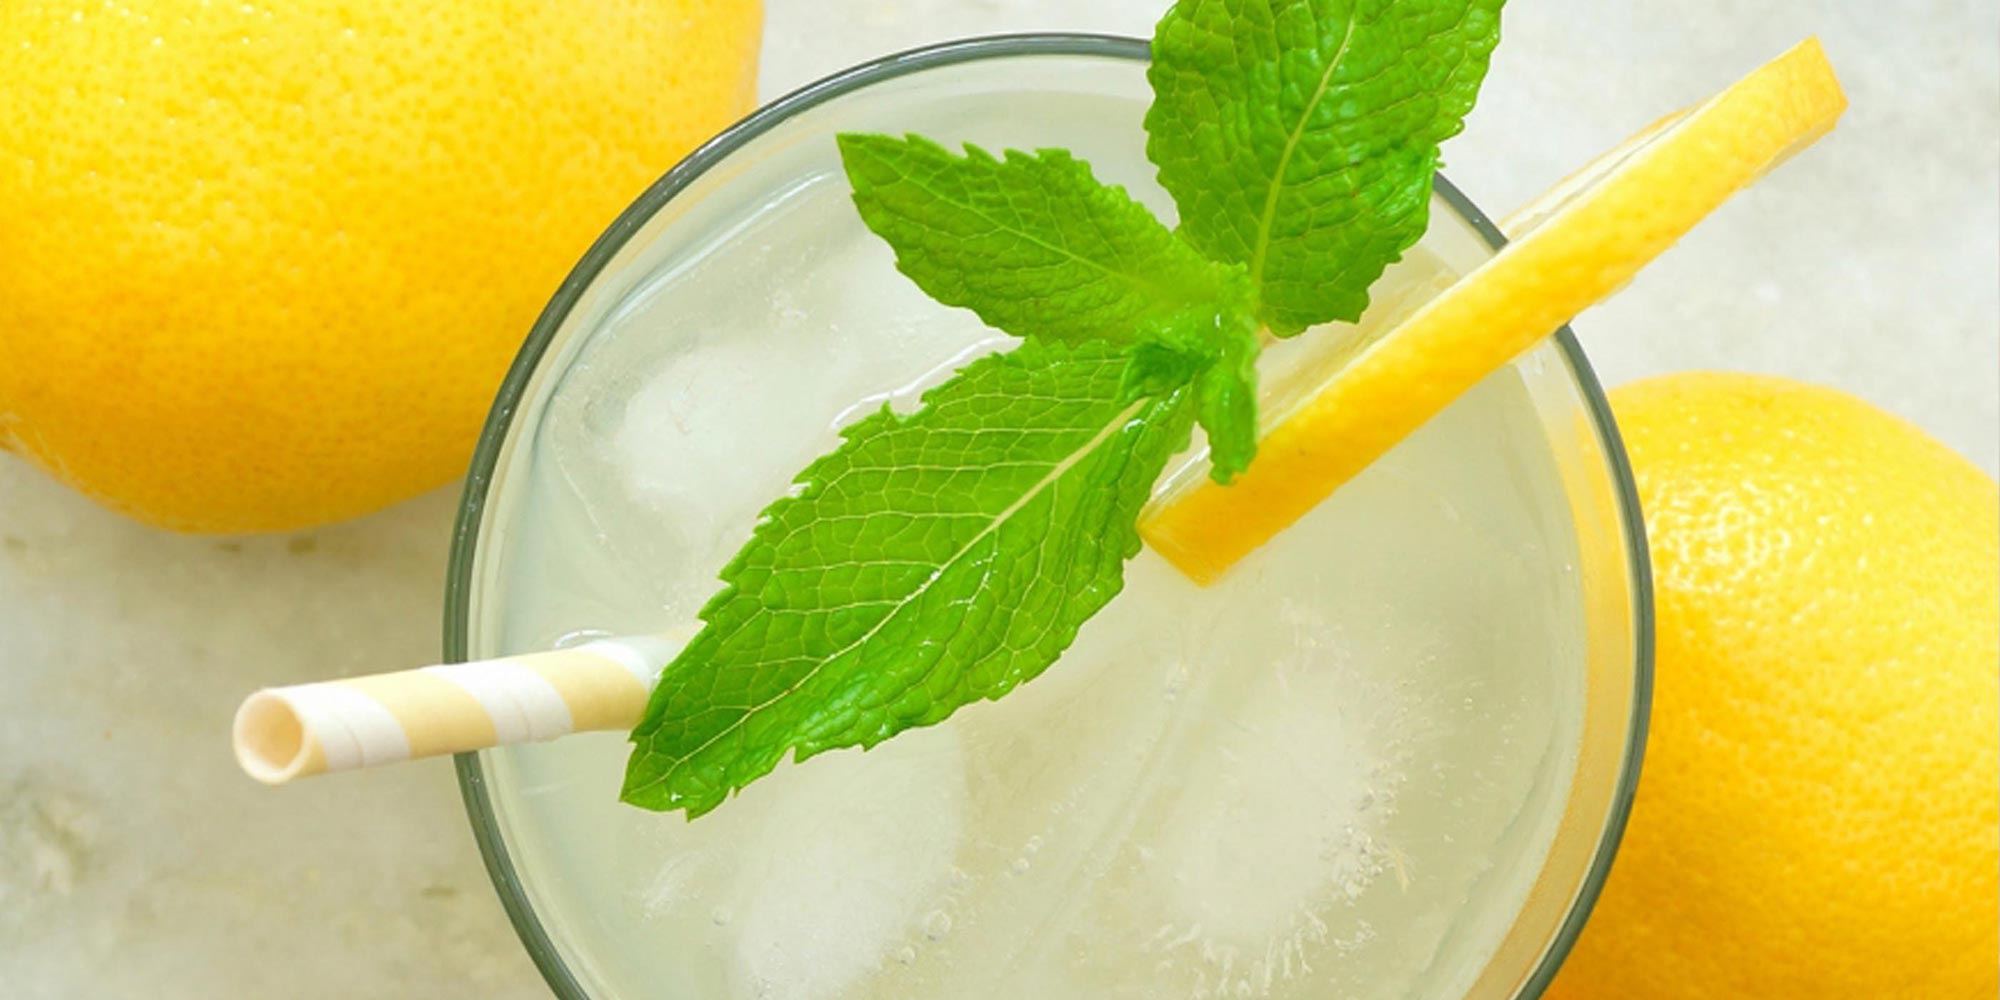 Alcoool Bebida de Limón y Menta 100ml